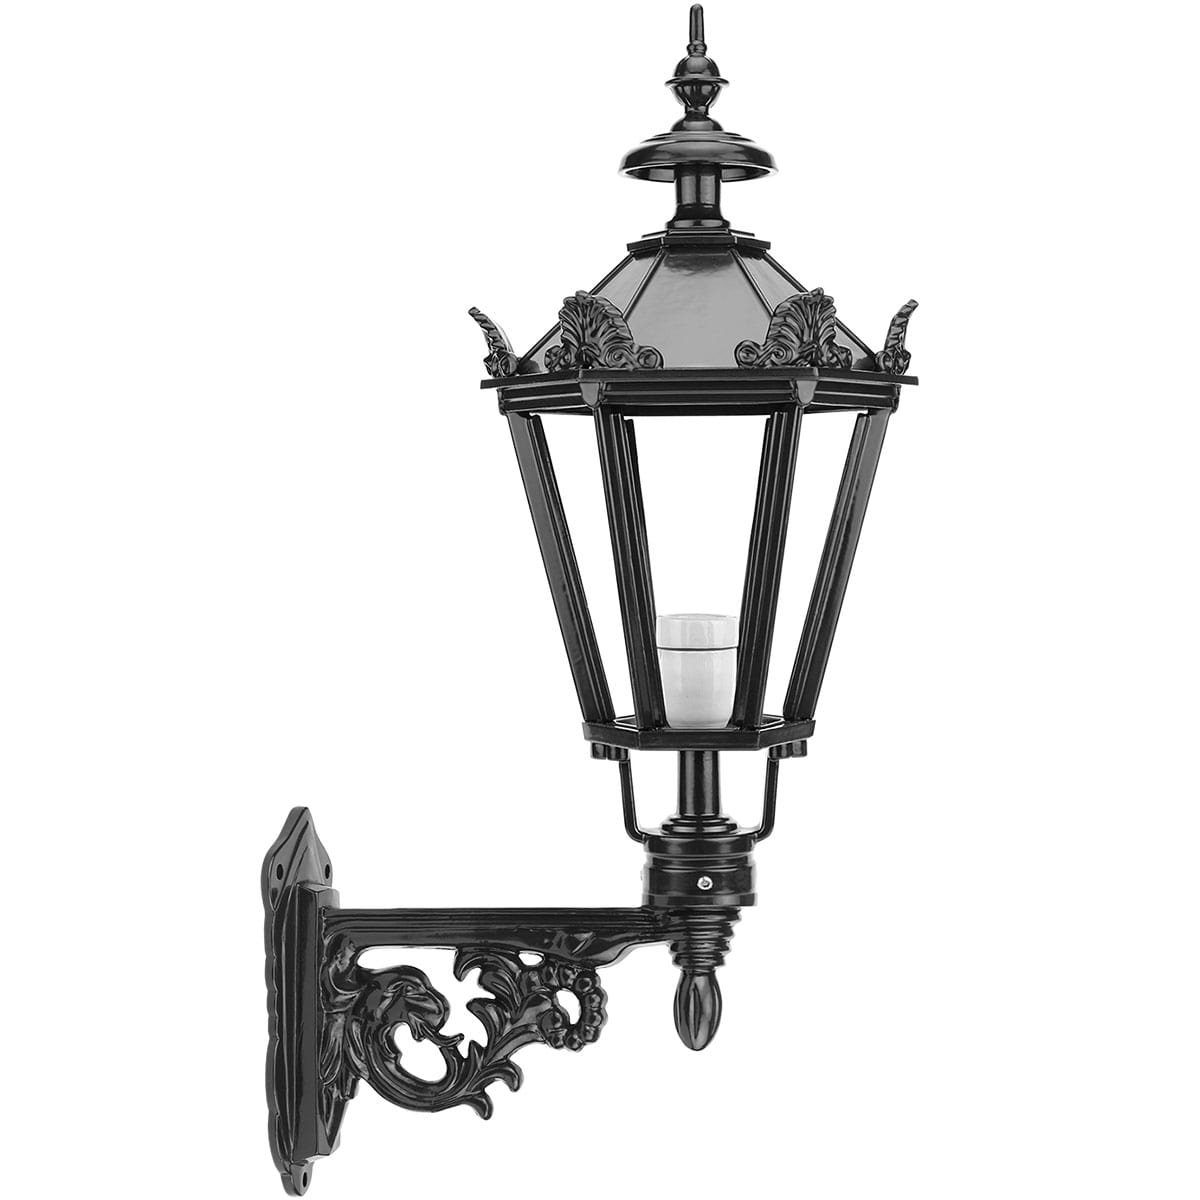 Buitenverlichting Klassiek Landelijk Muurlampje buiten Ellewoutsdijk - 68 cm